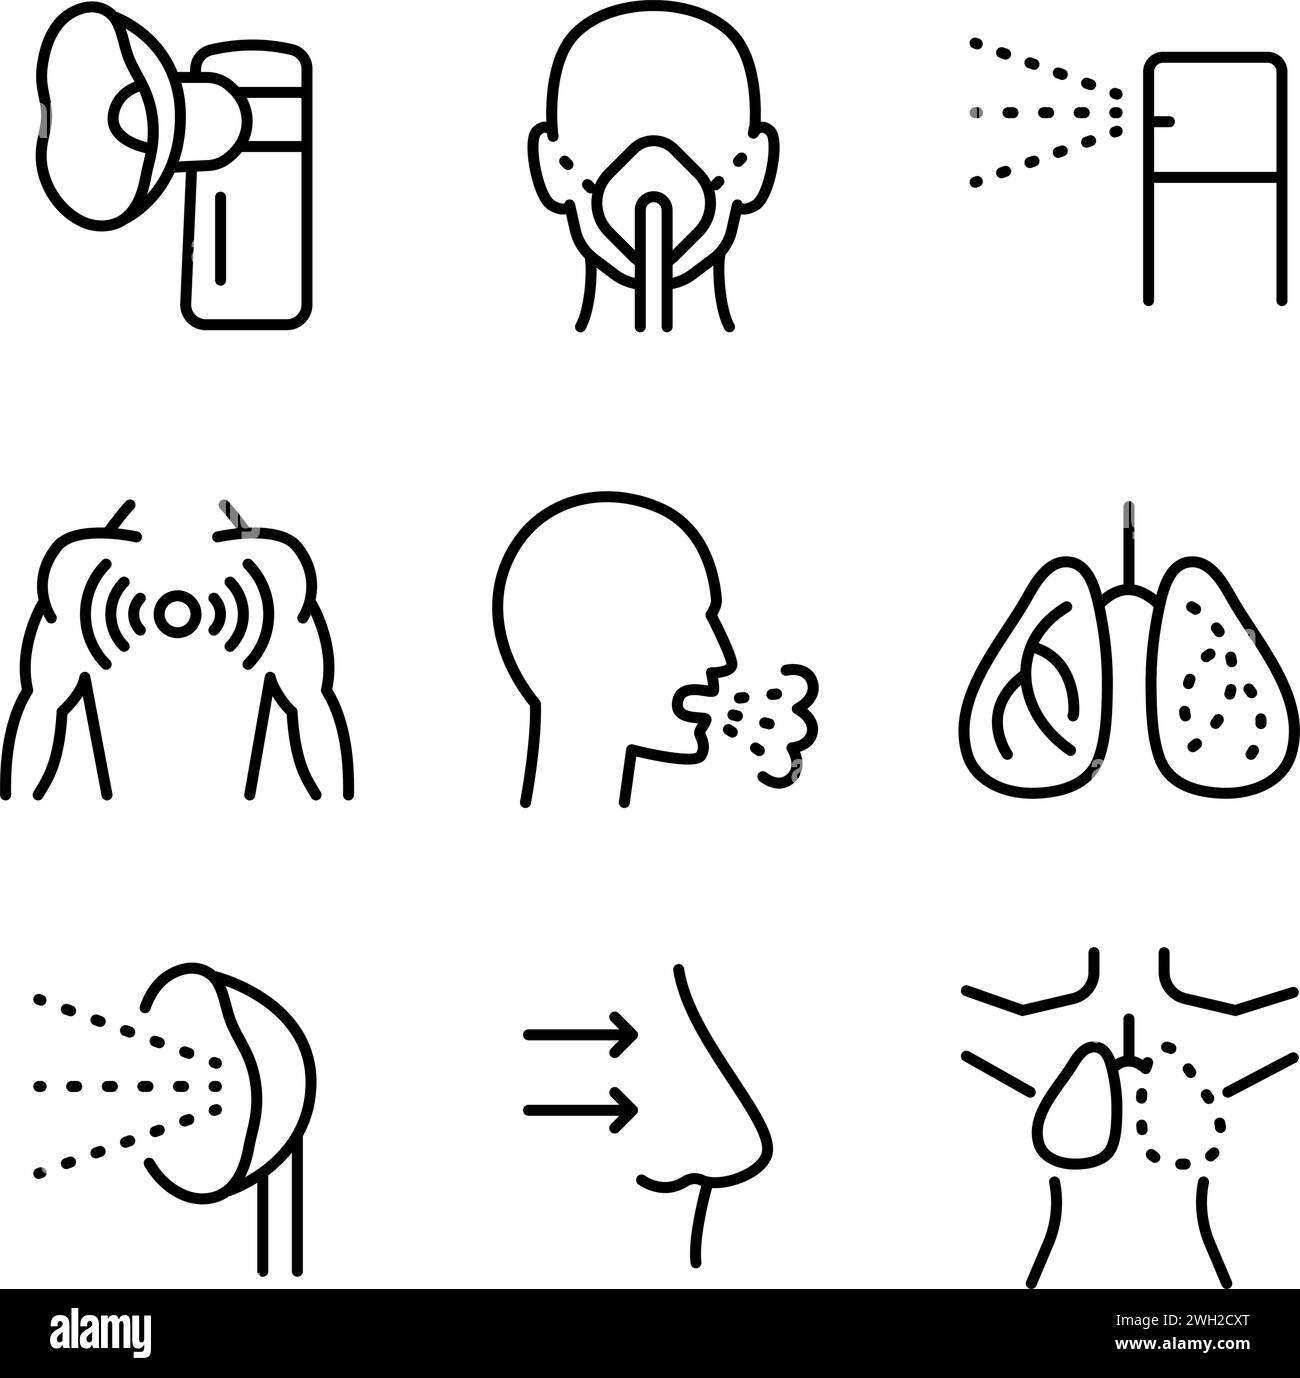 Icone vettoriali serie di nebulizzatori di diversi tipi. Illustrazione del profilo vettoriale. Simbolo sanitario isolato su sfondo bianco. Illustrazione Vettoriale